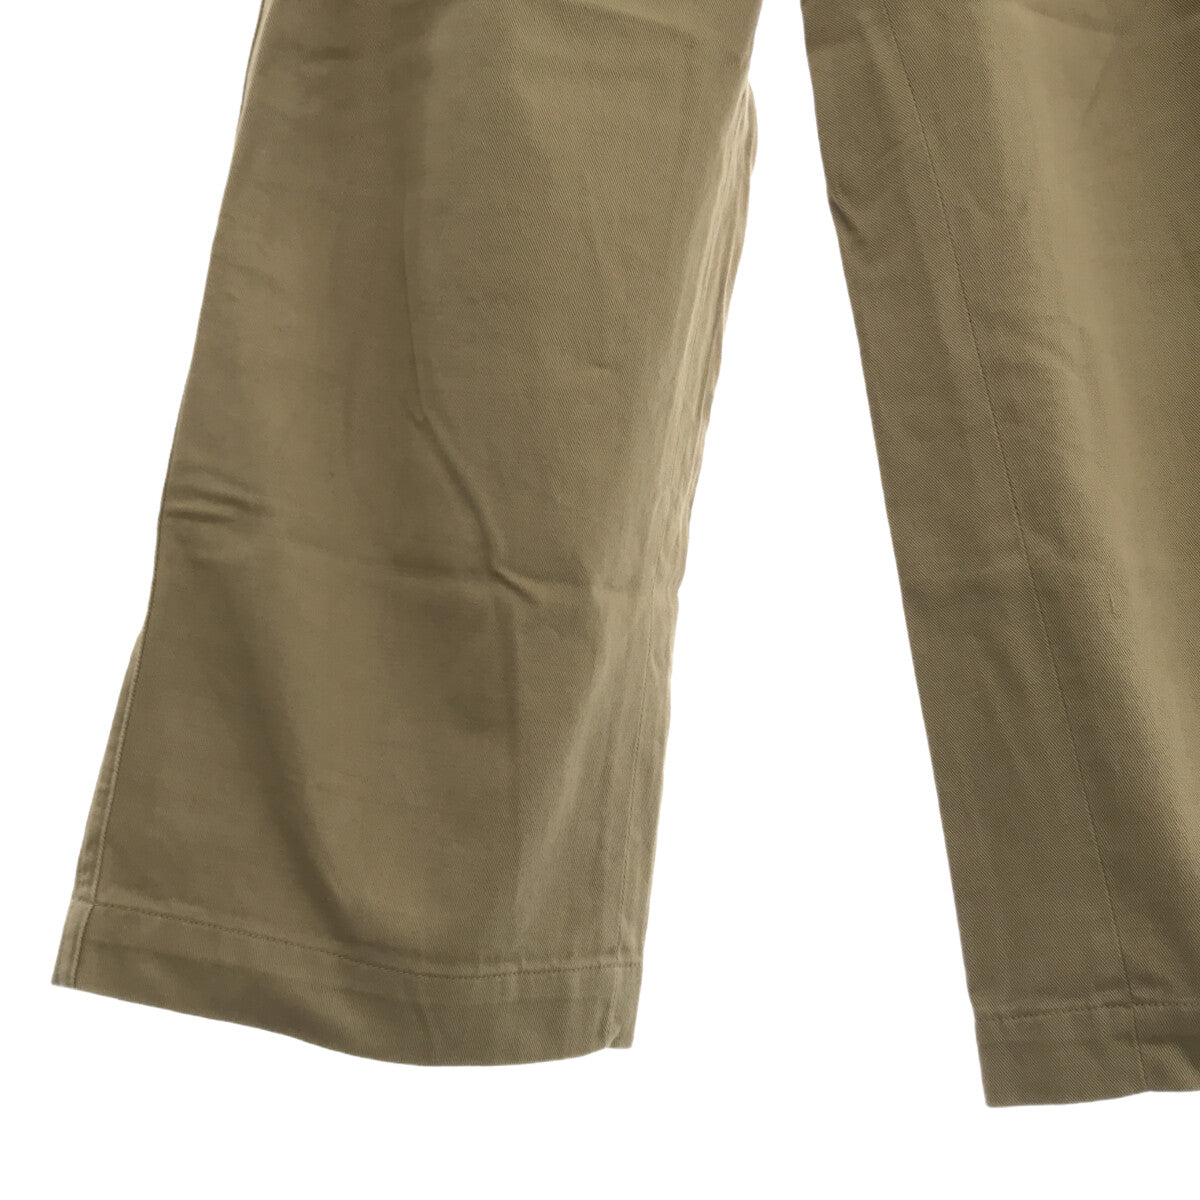 VINTAGE / ヴィンテージ古着 | 推定1950s〜 Australian Army Gurkha Chino Trousers / オーストラリア軍 2タック グルカ チノトラウザーパンツ | 5 |